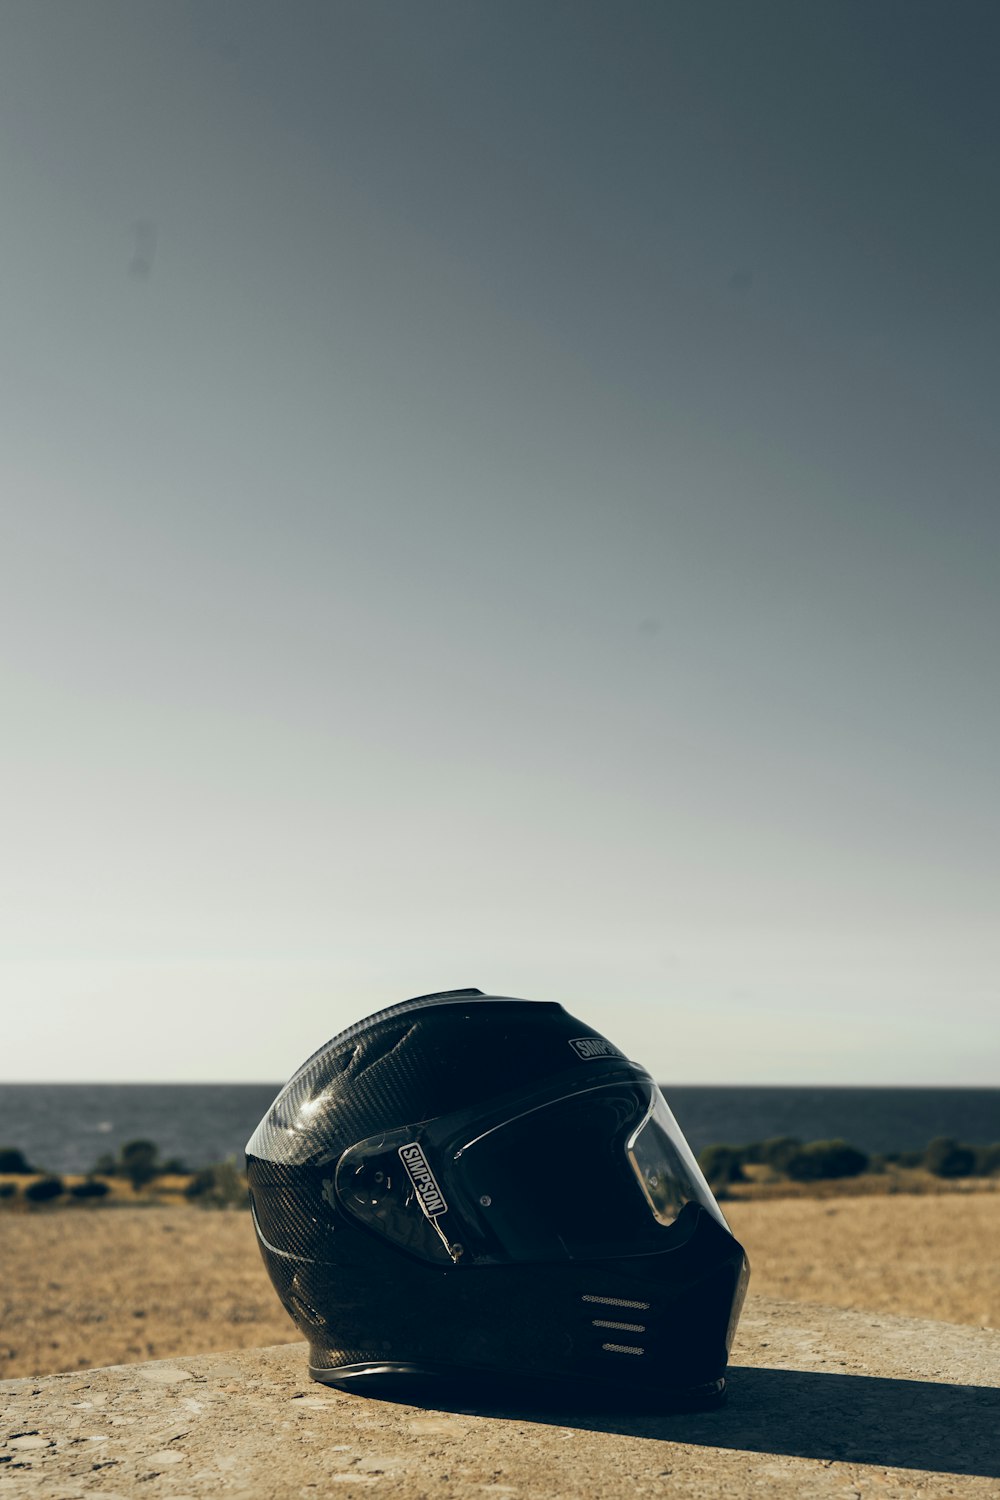 casque de moto noir sur sable brun pendant la journée